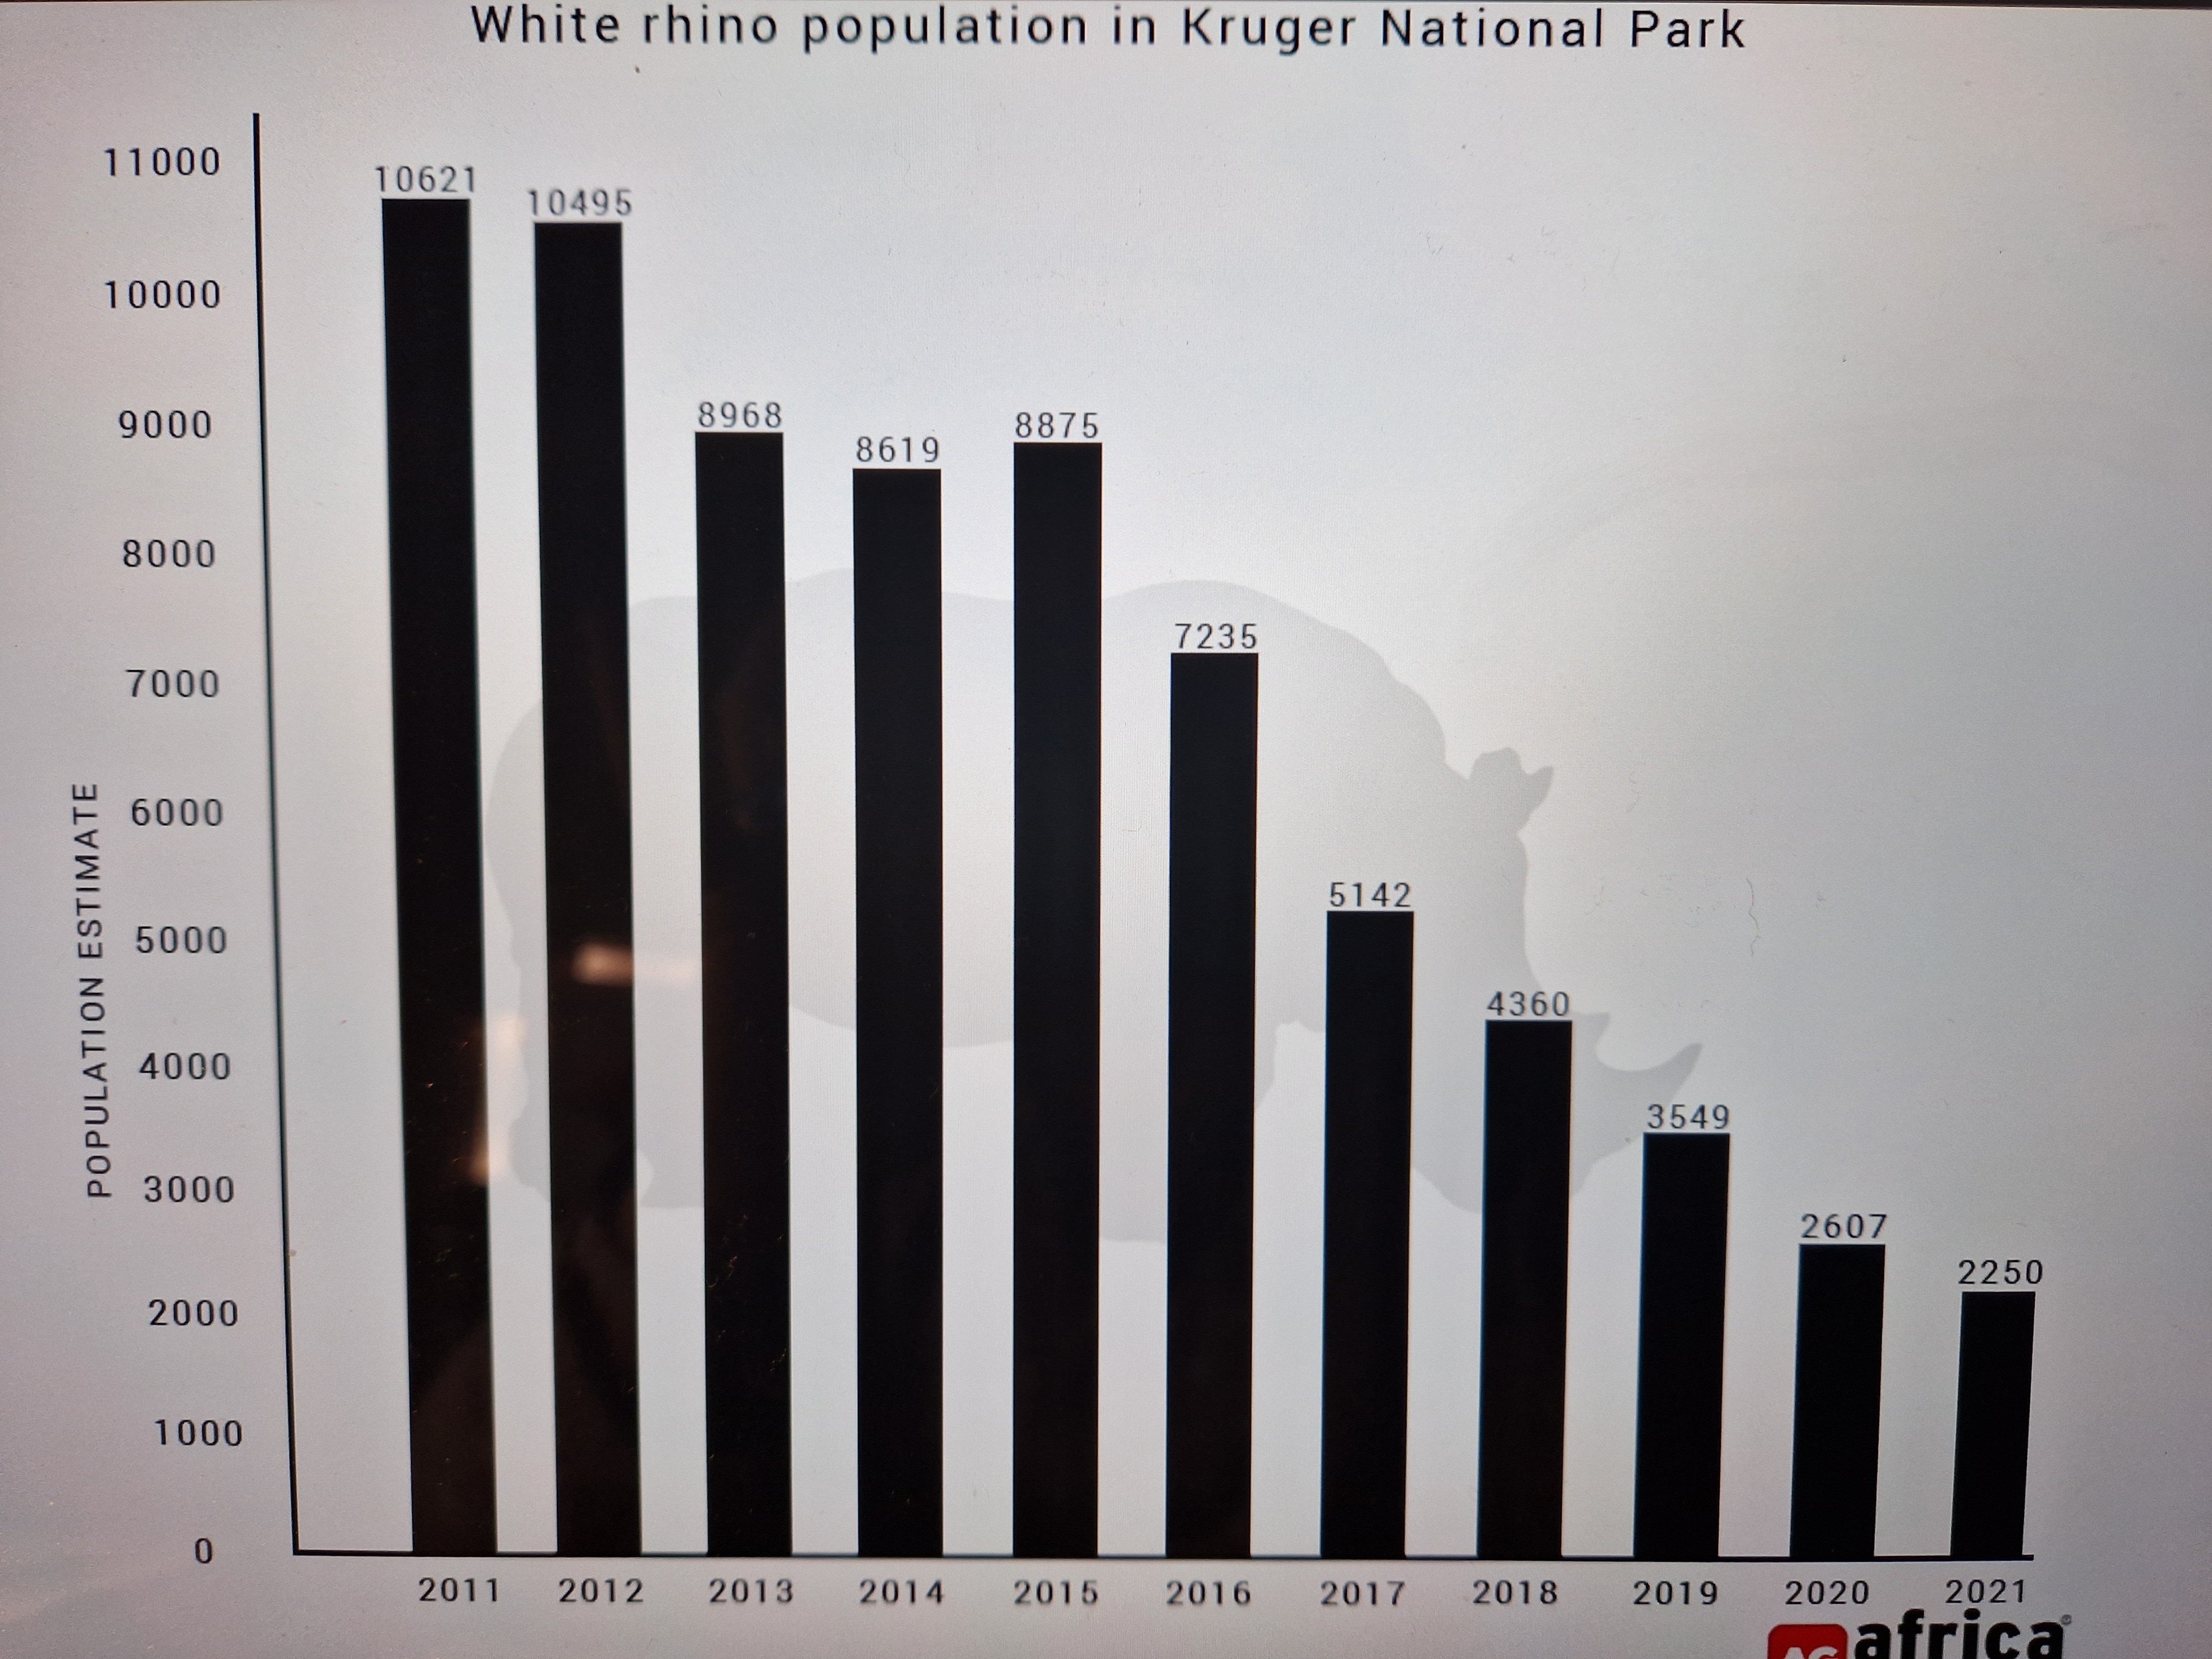 Evolution du nombre des Rhinocéros blancs dans le Parc Krüger de 2011 à 2021 selon la newsletter@africageographic.com du 30 12 2022.